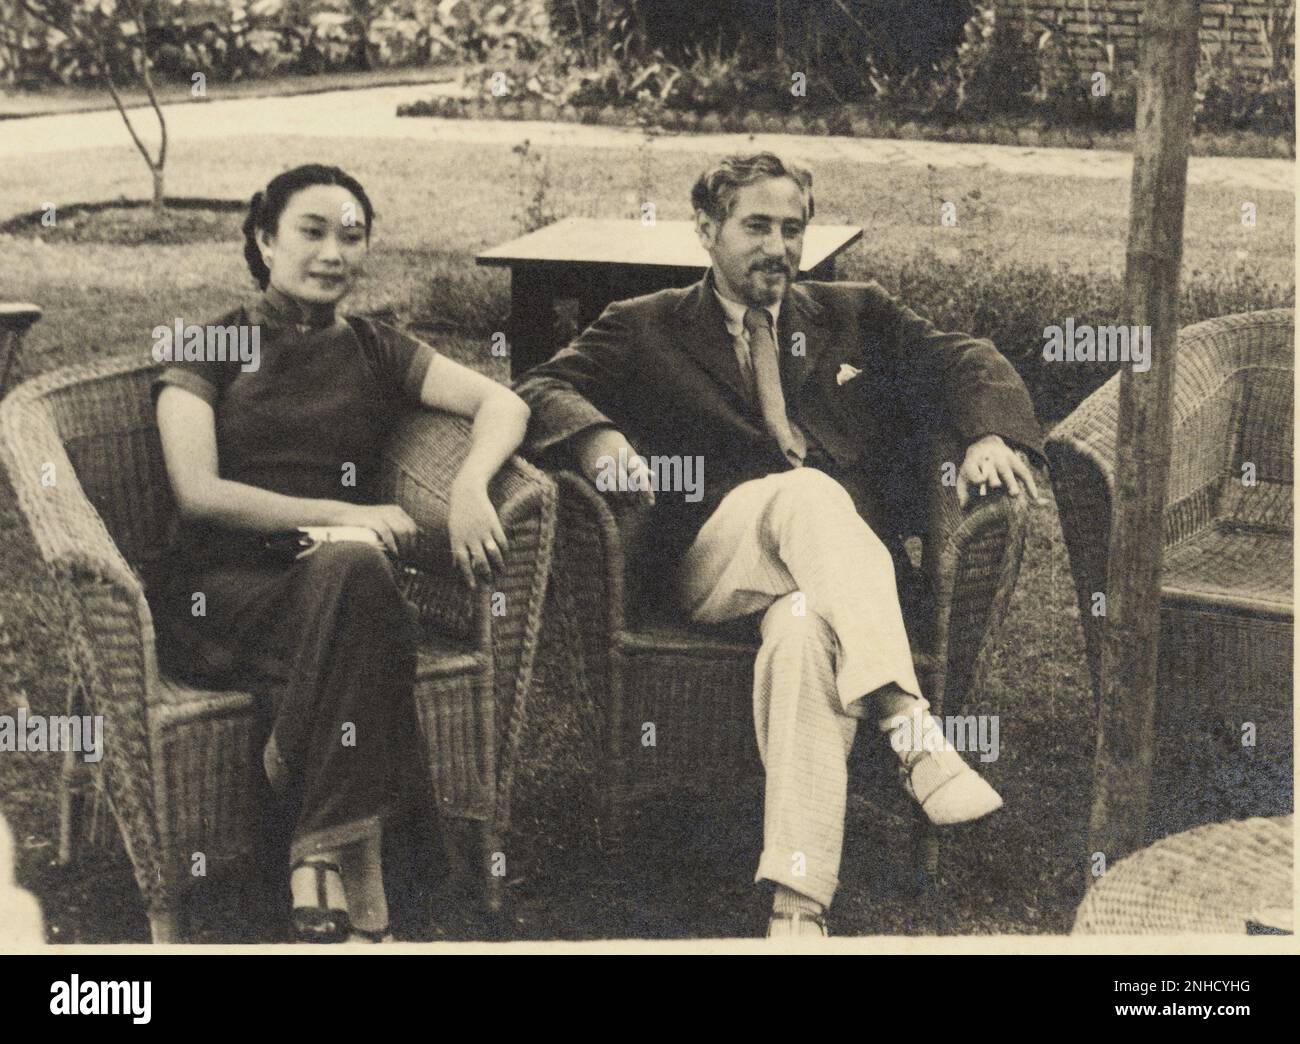 1937 , 11 février , Shanghai : le célèbre JOSEF Von STERNBERG ( Wienn 1894 - Hollywood 1969 ) , réalisateur de SHANGAI EXPRESS ( 1932 ) avec Marlene Dietrich , avec une hôtesse et interprète chinoise lors d'un voyage promotionnel en Chine - REGISTA - CINÉMA ---- Archivio GBB Banque D'Images